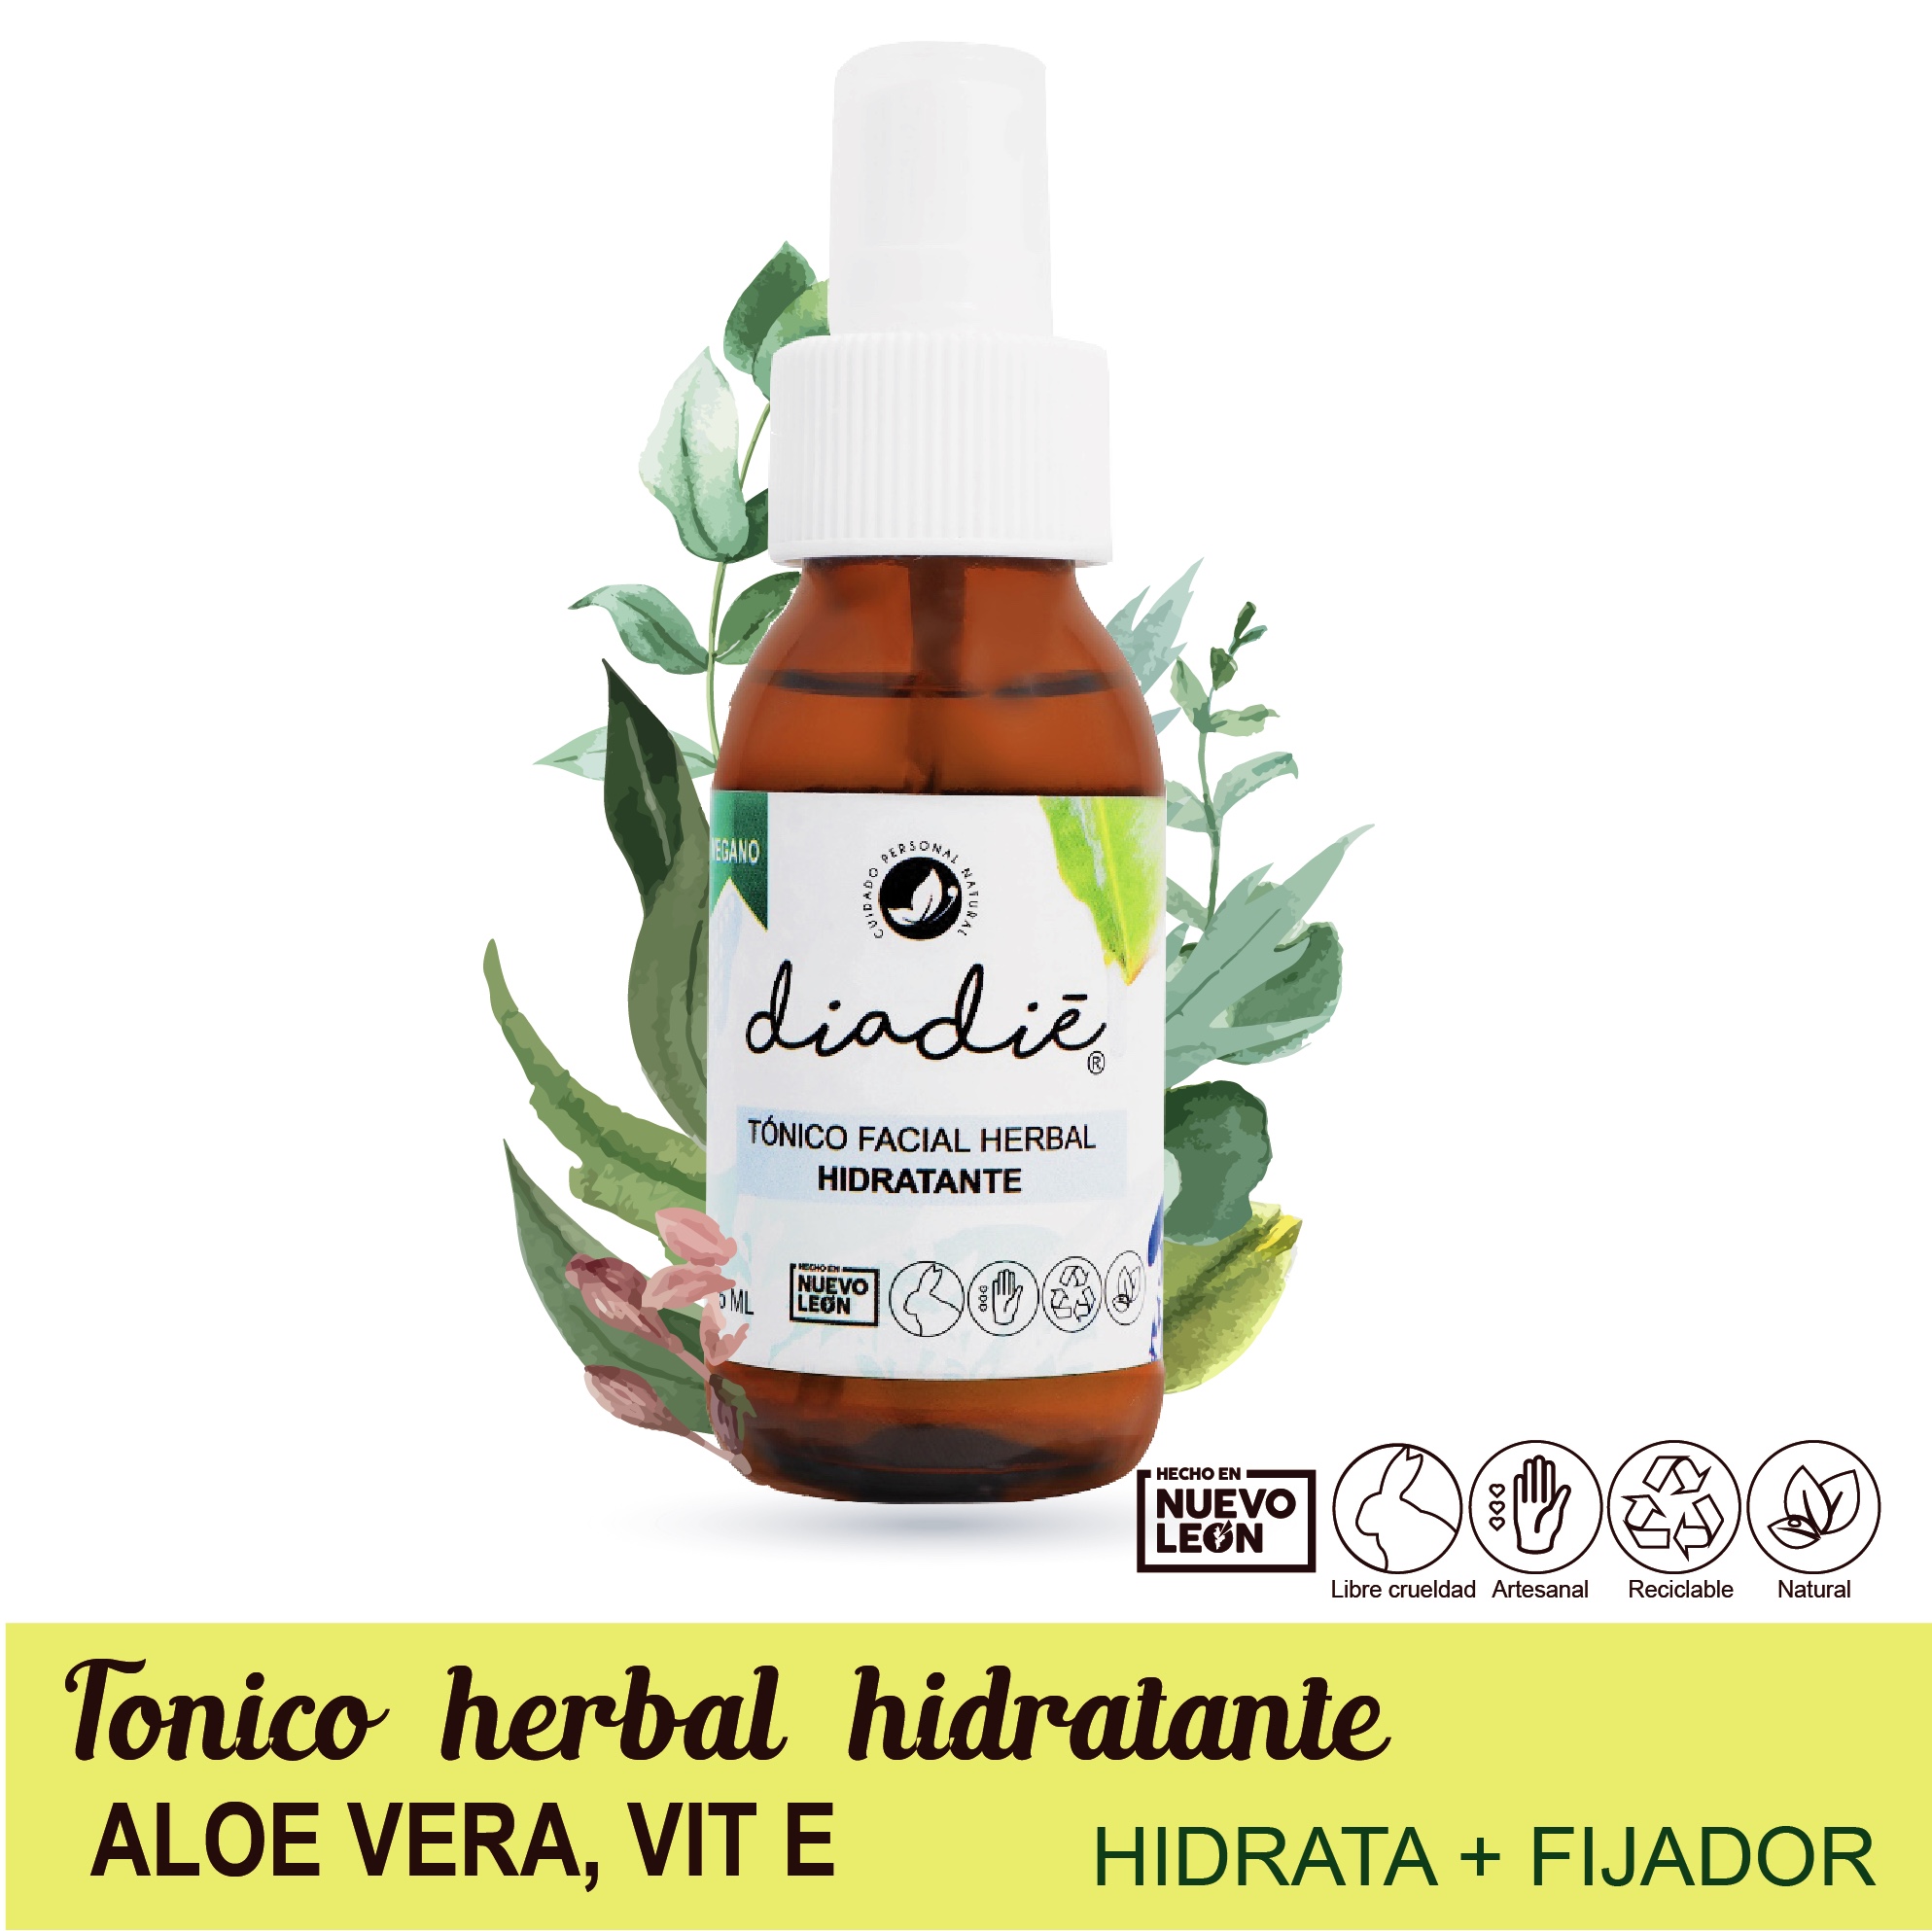 Tónico herbal hidrantante. Orgánico hecho de Aloe Vera y Vitamina E. Hidrata y nutre. Fijador de maquillaje. Vegano. Natural